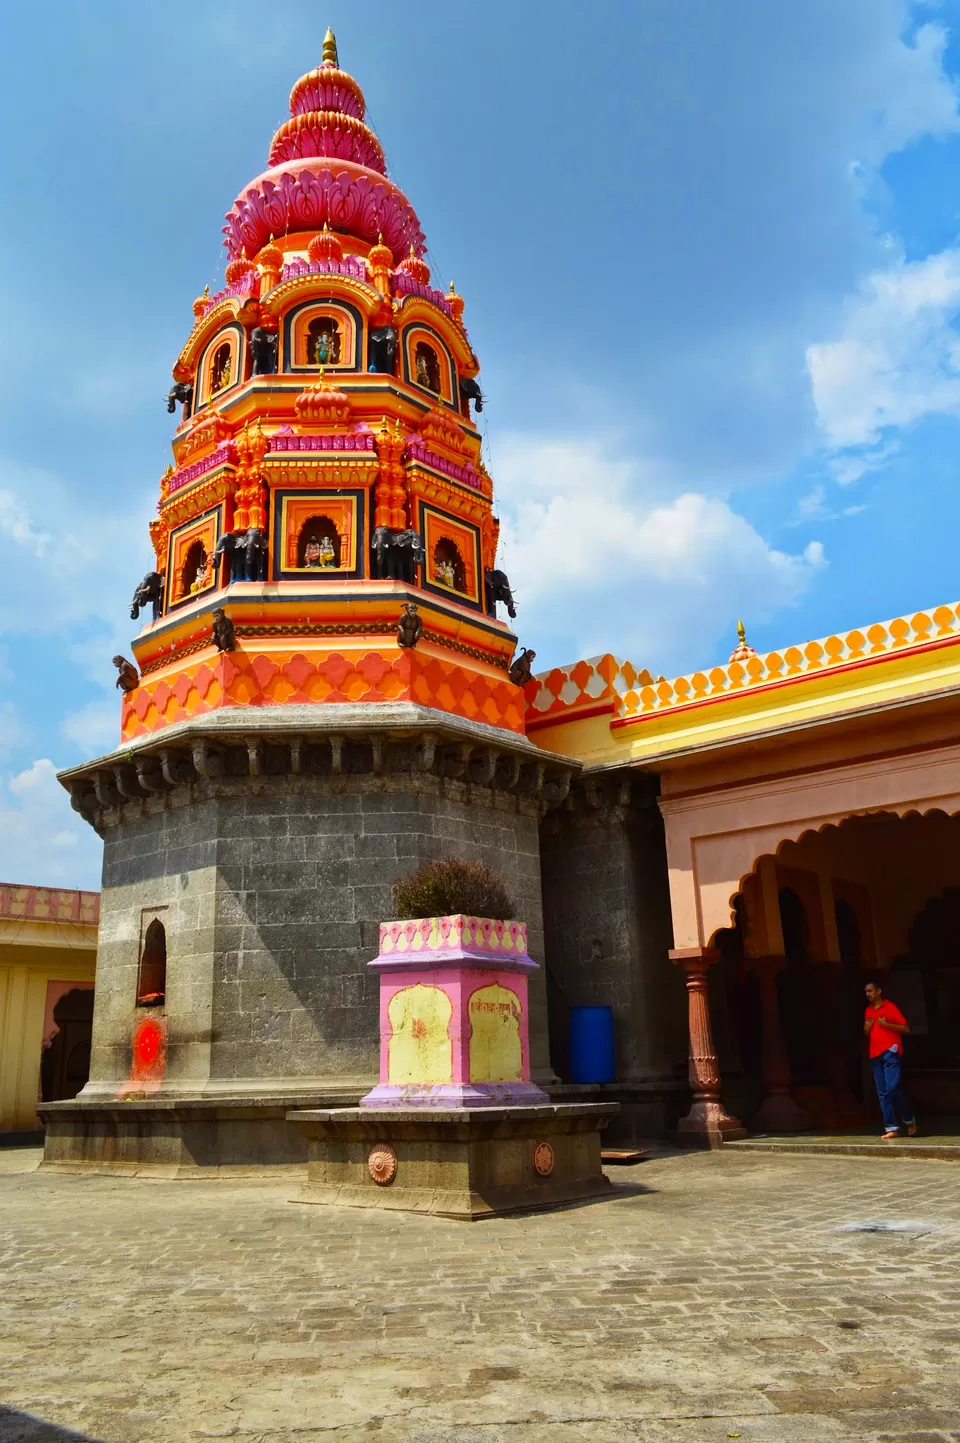 Photo of Moreshwar Temple, Morgaon, Maharashtra, India by Vishal Londhe